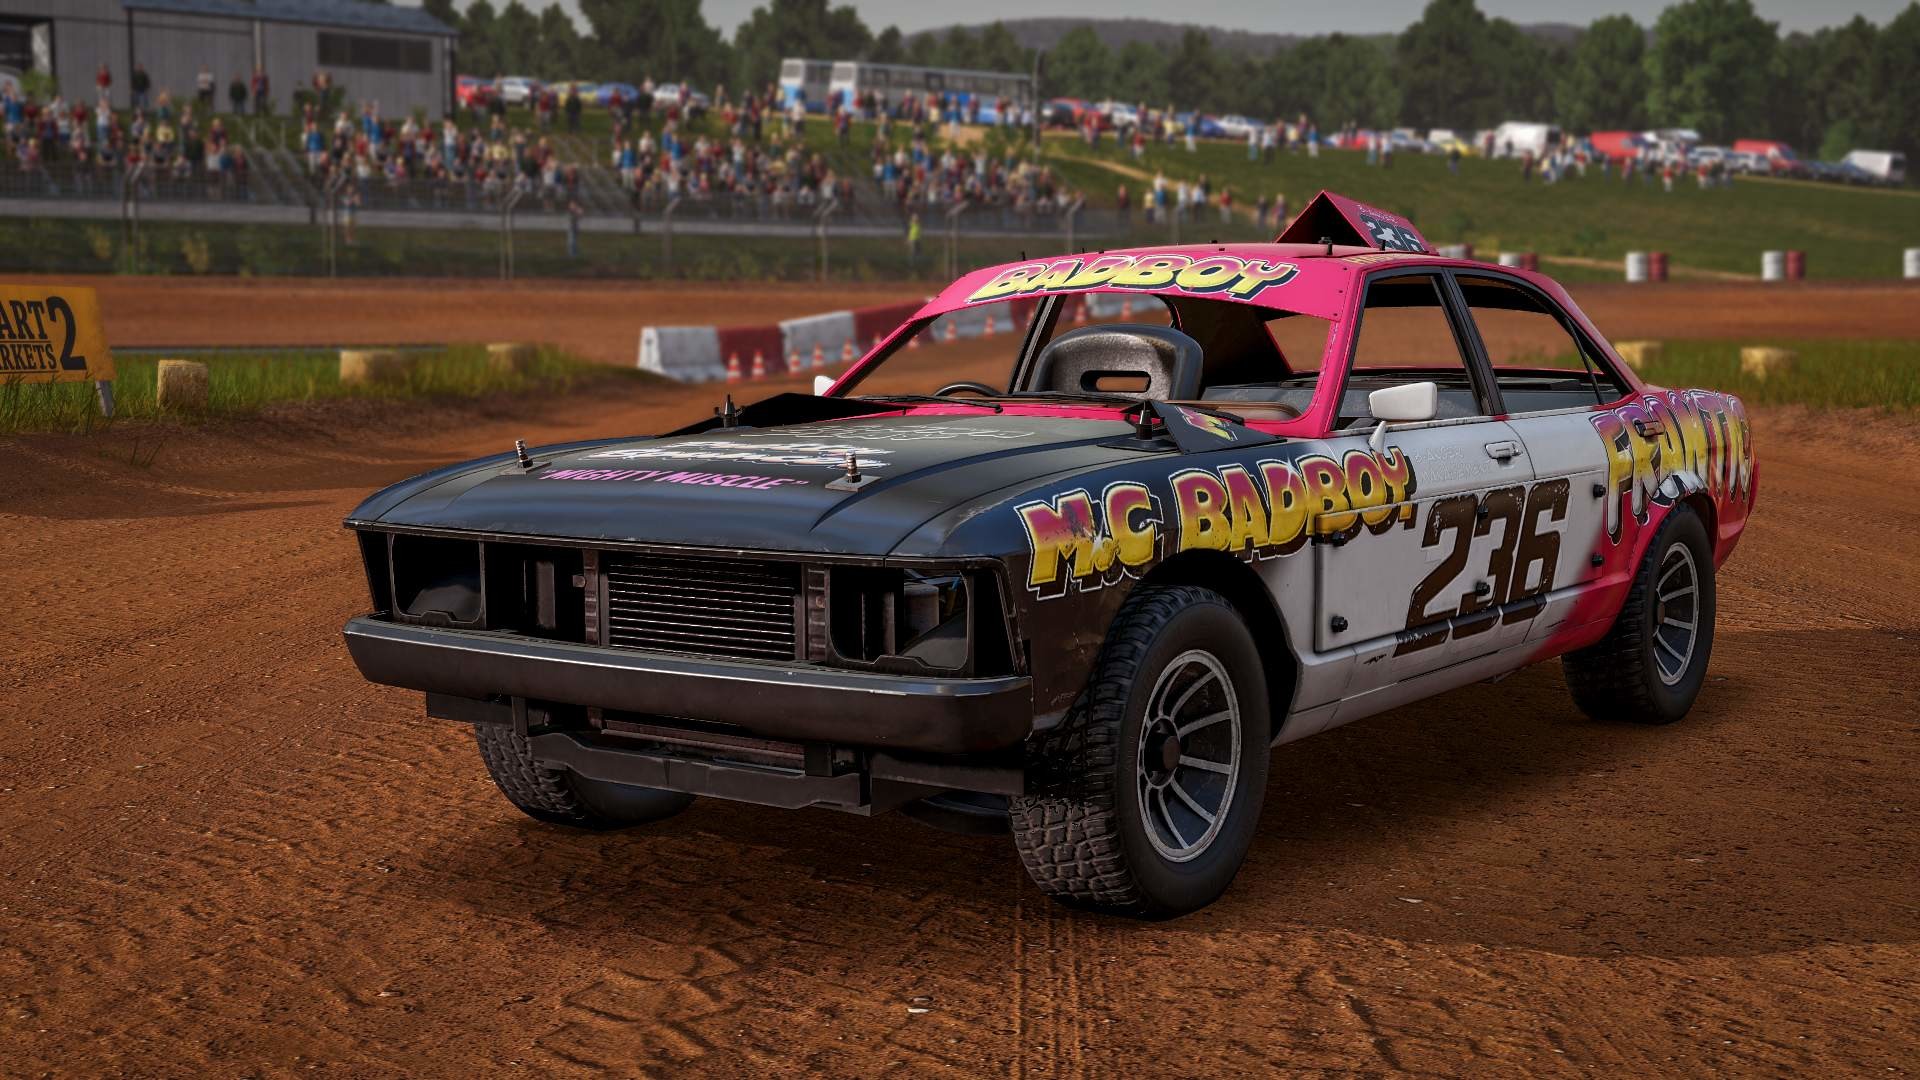 Wreckfest - Banger Racing Car Pack on Steam